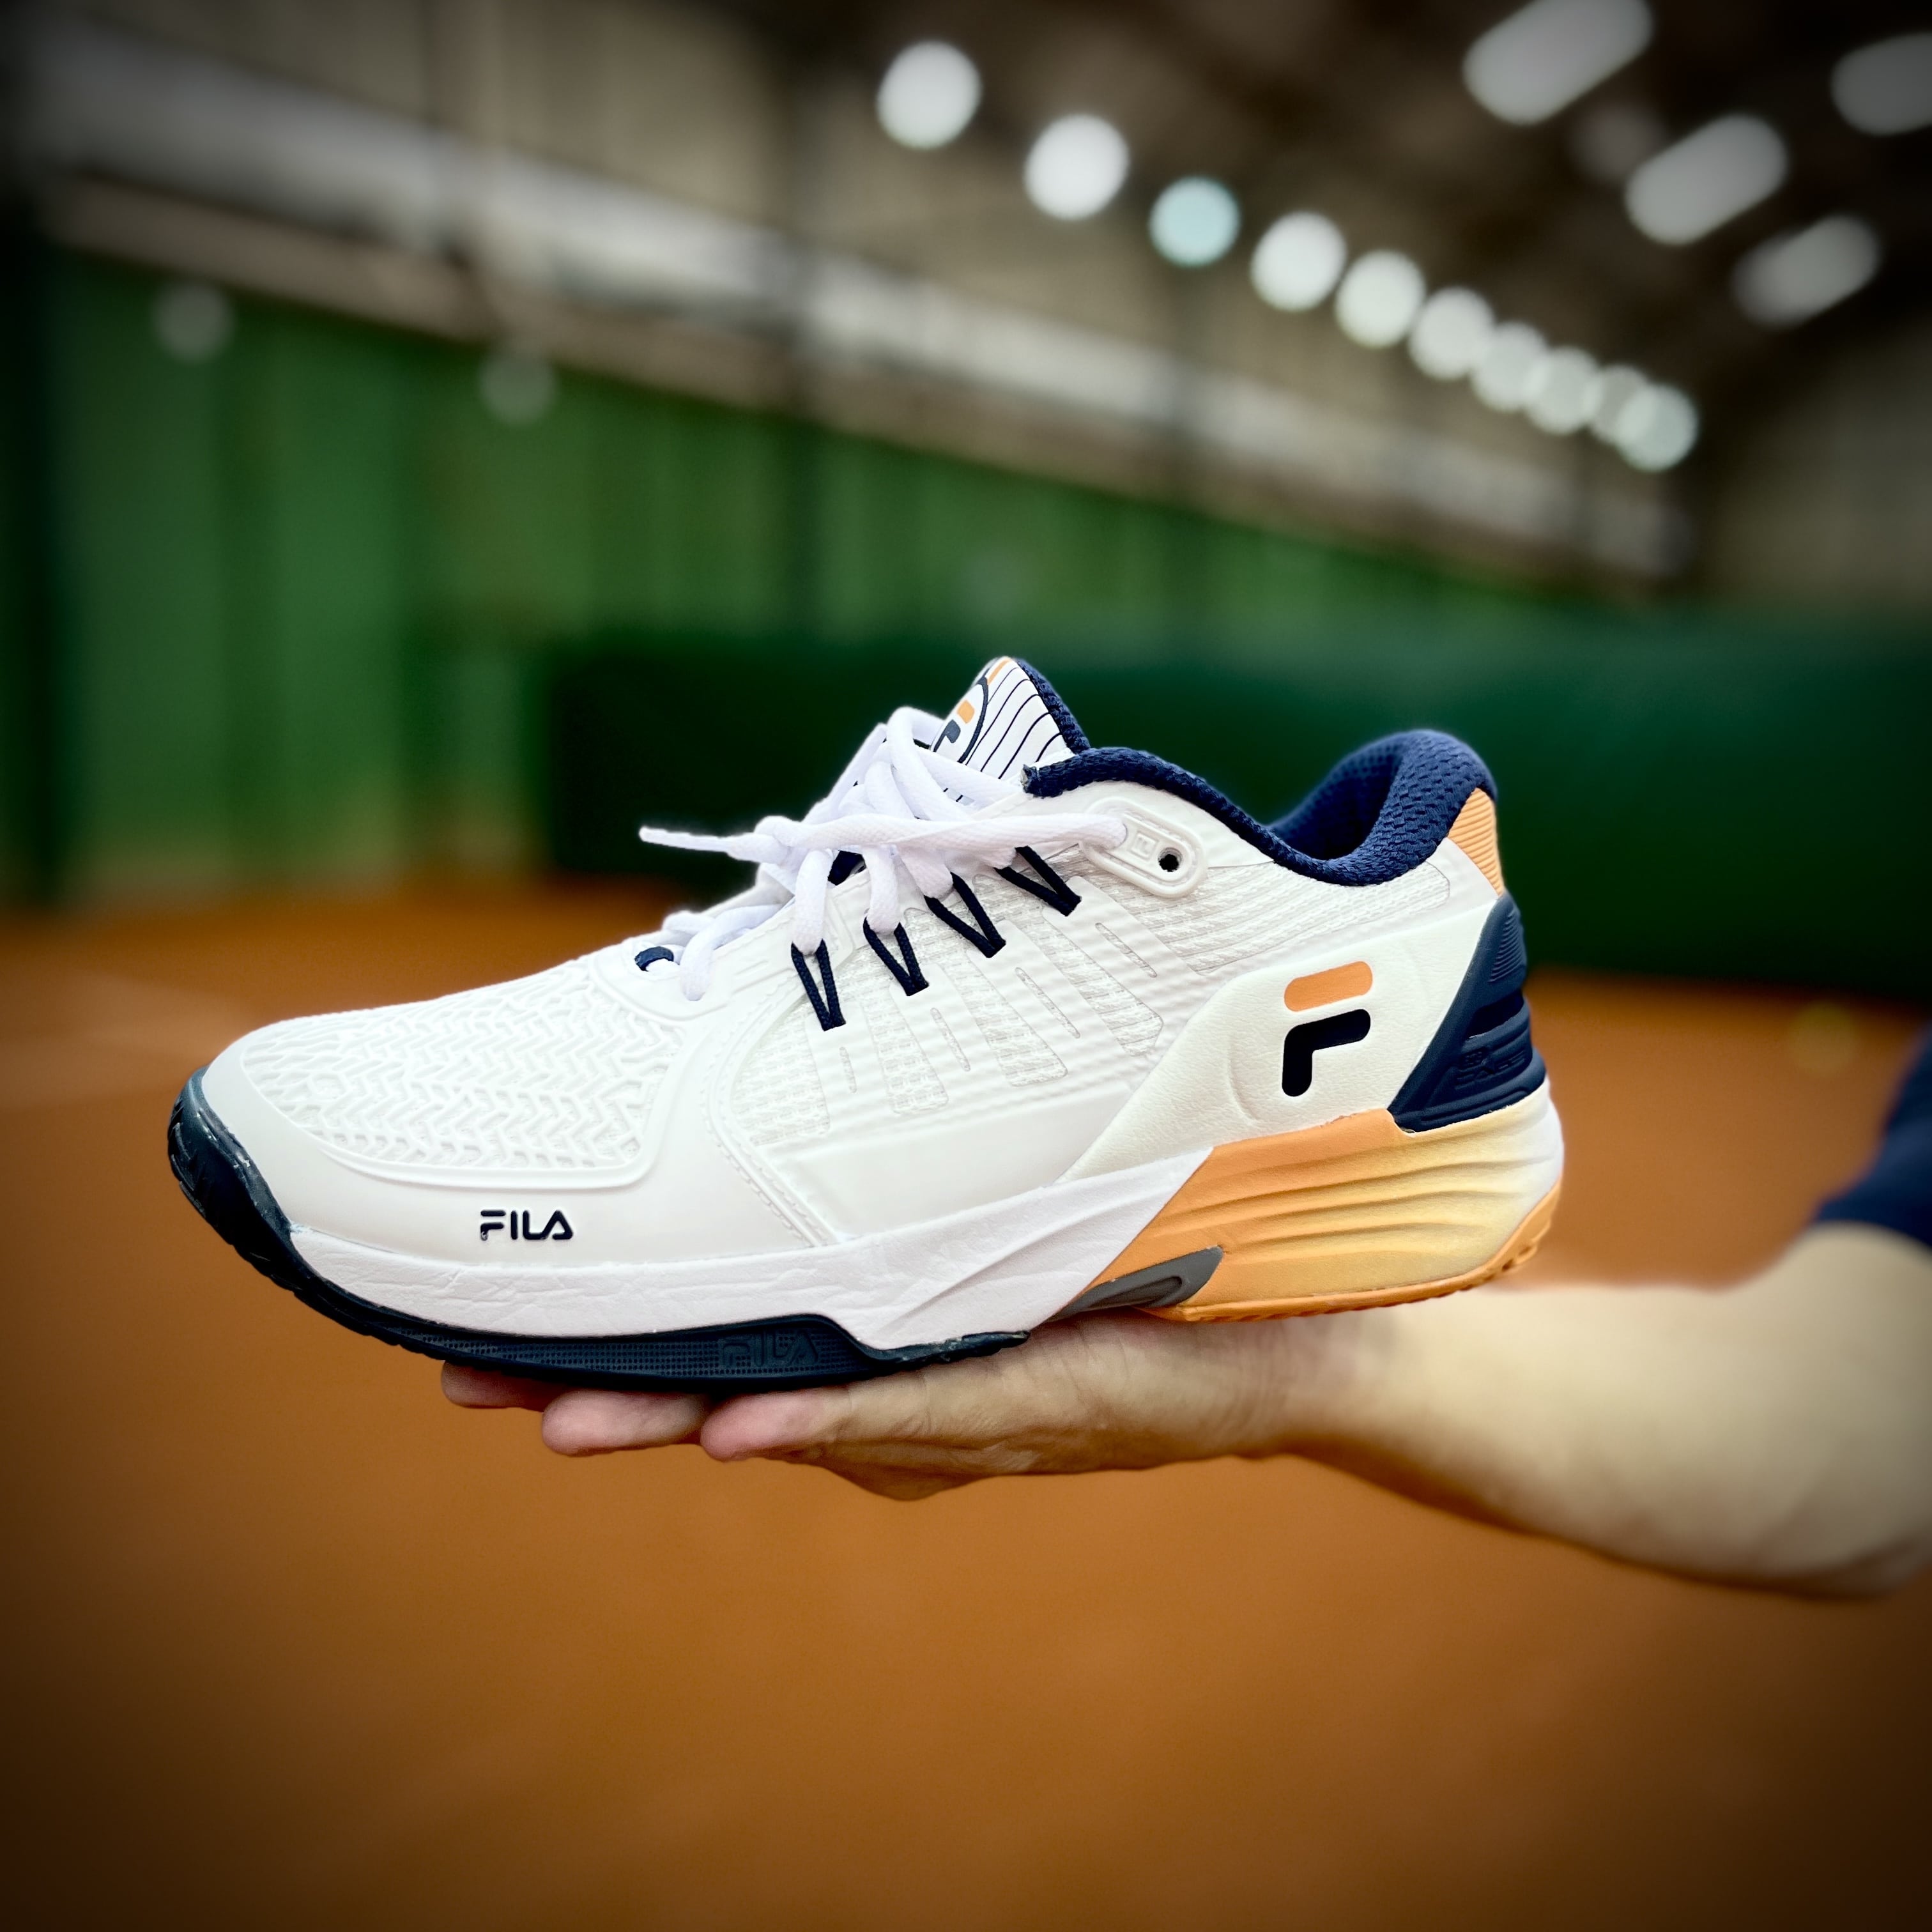 Review: Testamos o calçado Fila Float Verve para jogar tênis no saibro ·  Revista TÊNIS